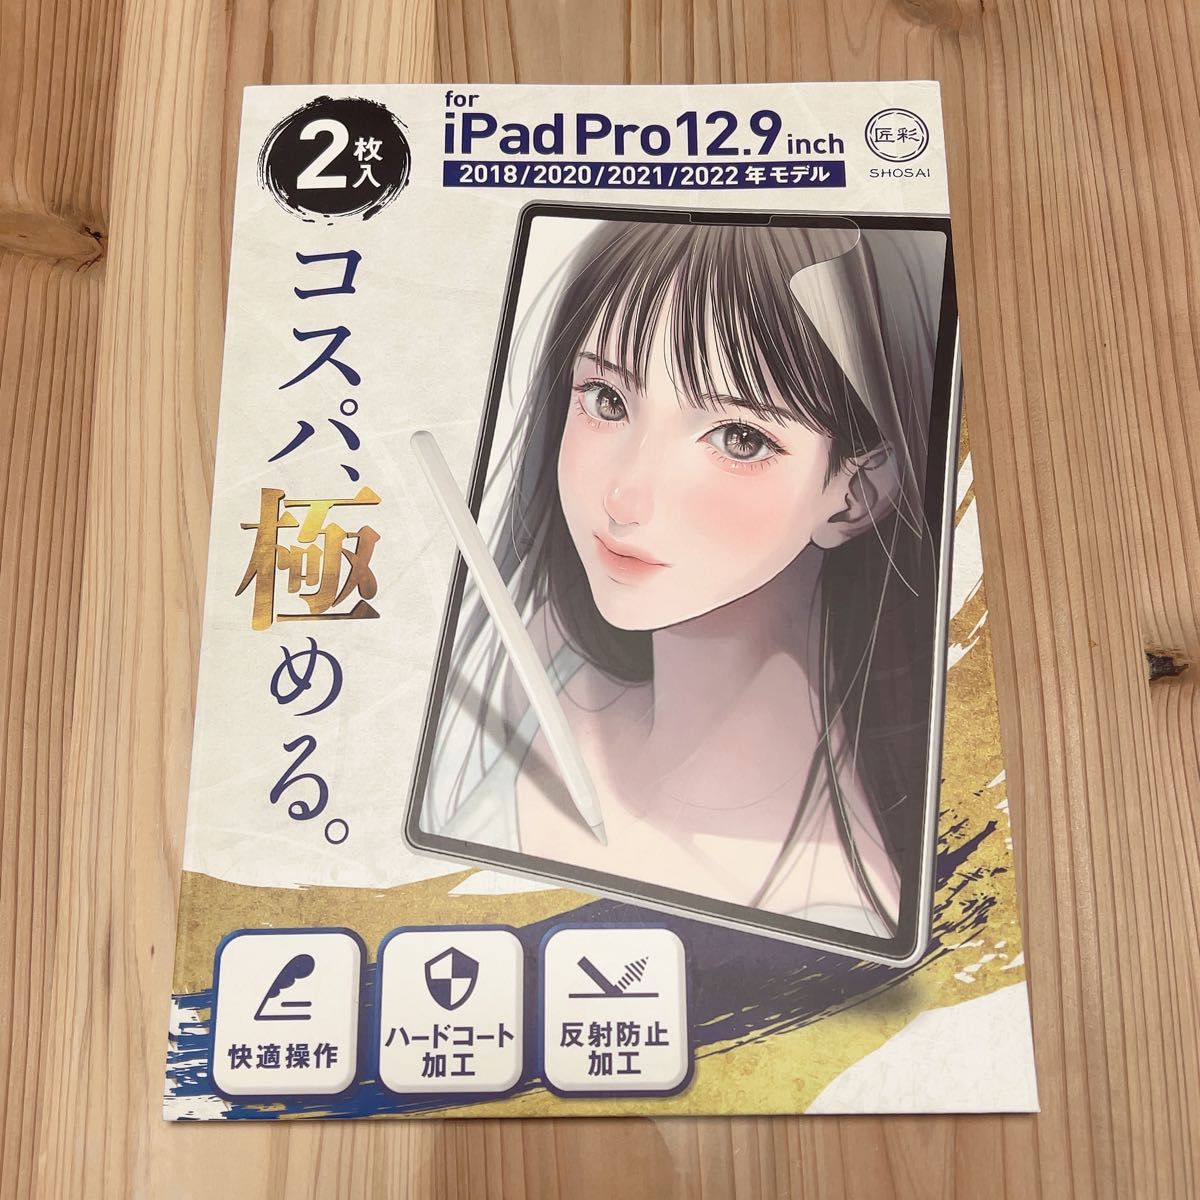 (プロ漫画家推薦) 2枚入 匠彩 ペーパーライクフィルム iPad Pro 12.9 フィルム ケント紙タイプ 第3〜6世代